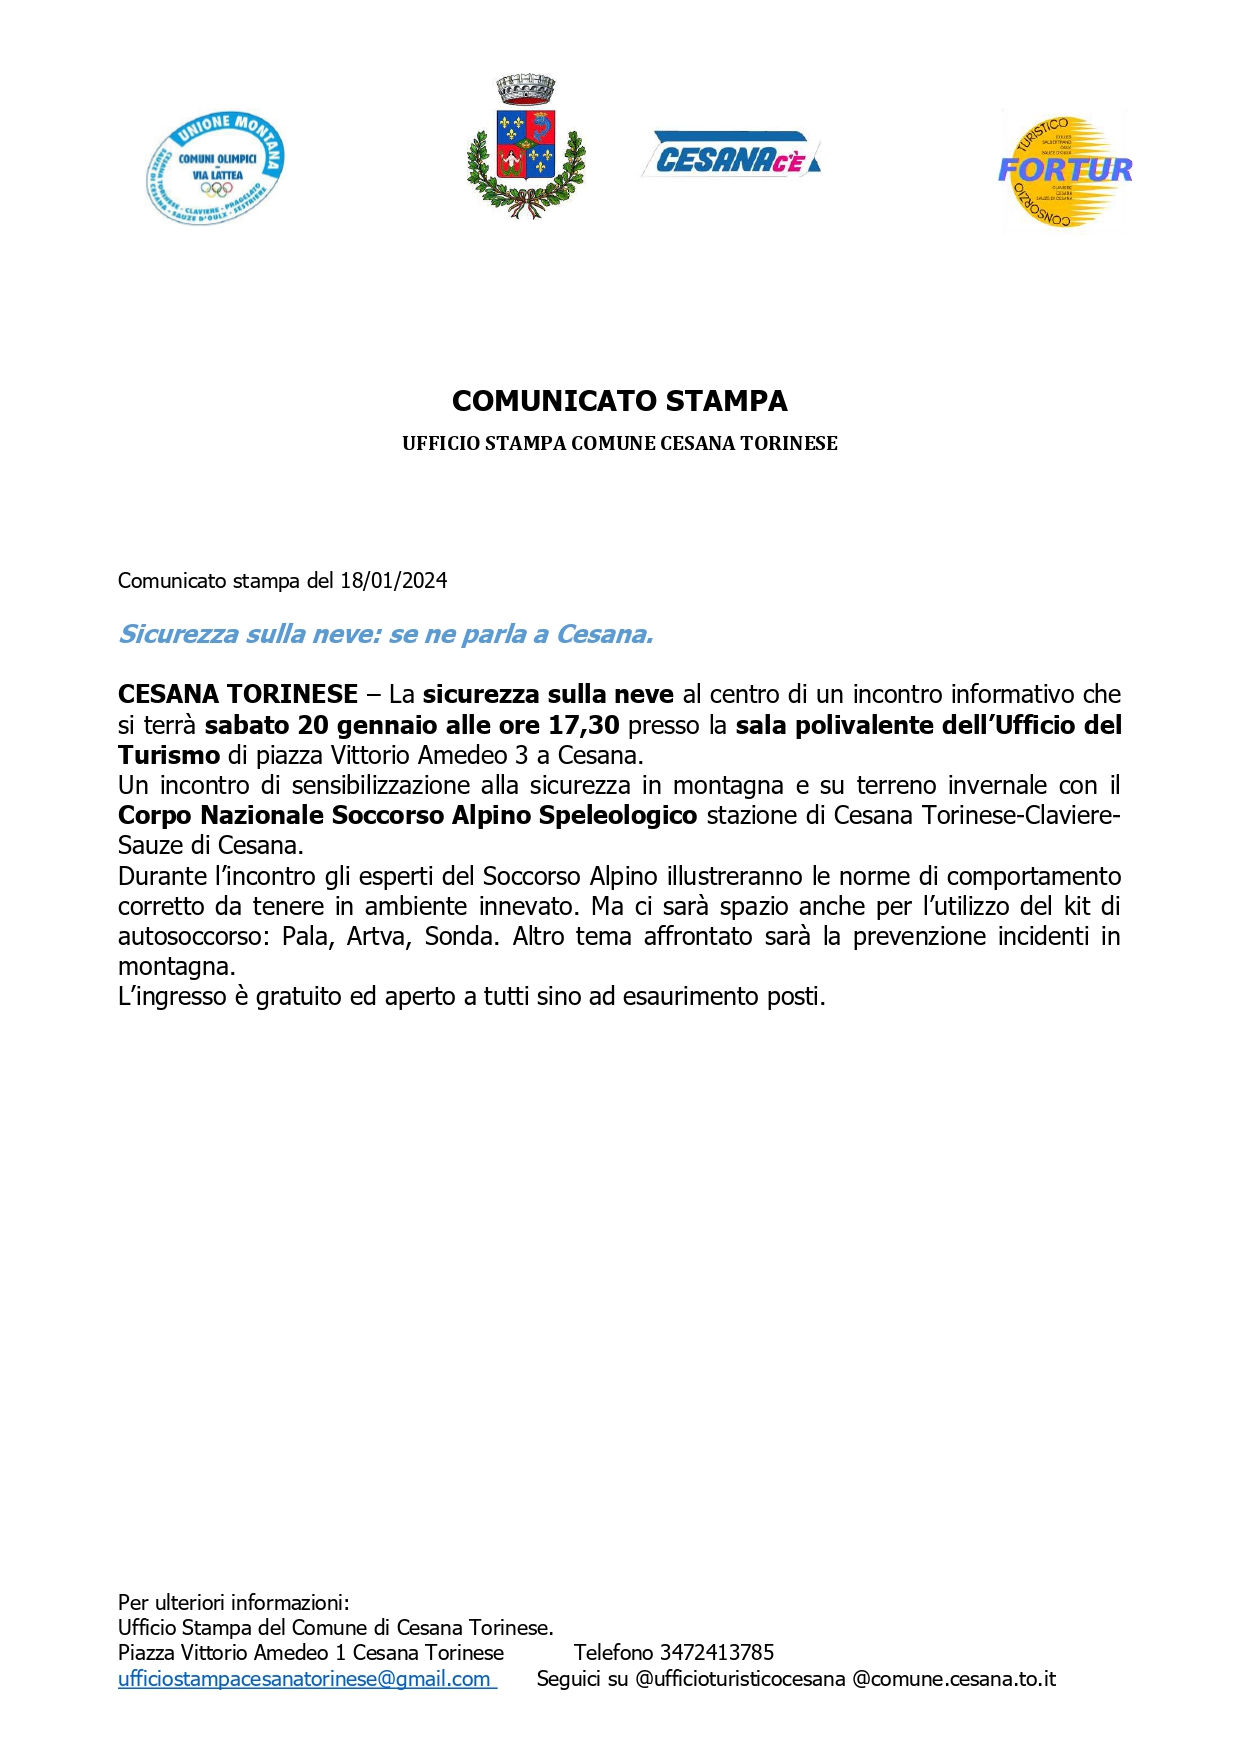 Comunicato Stampa del 18/01/2024 “Sicurezza sulla neve: se ne parla a Cesana”.